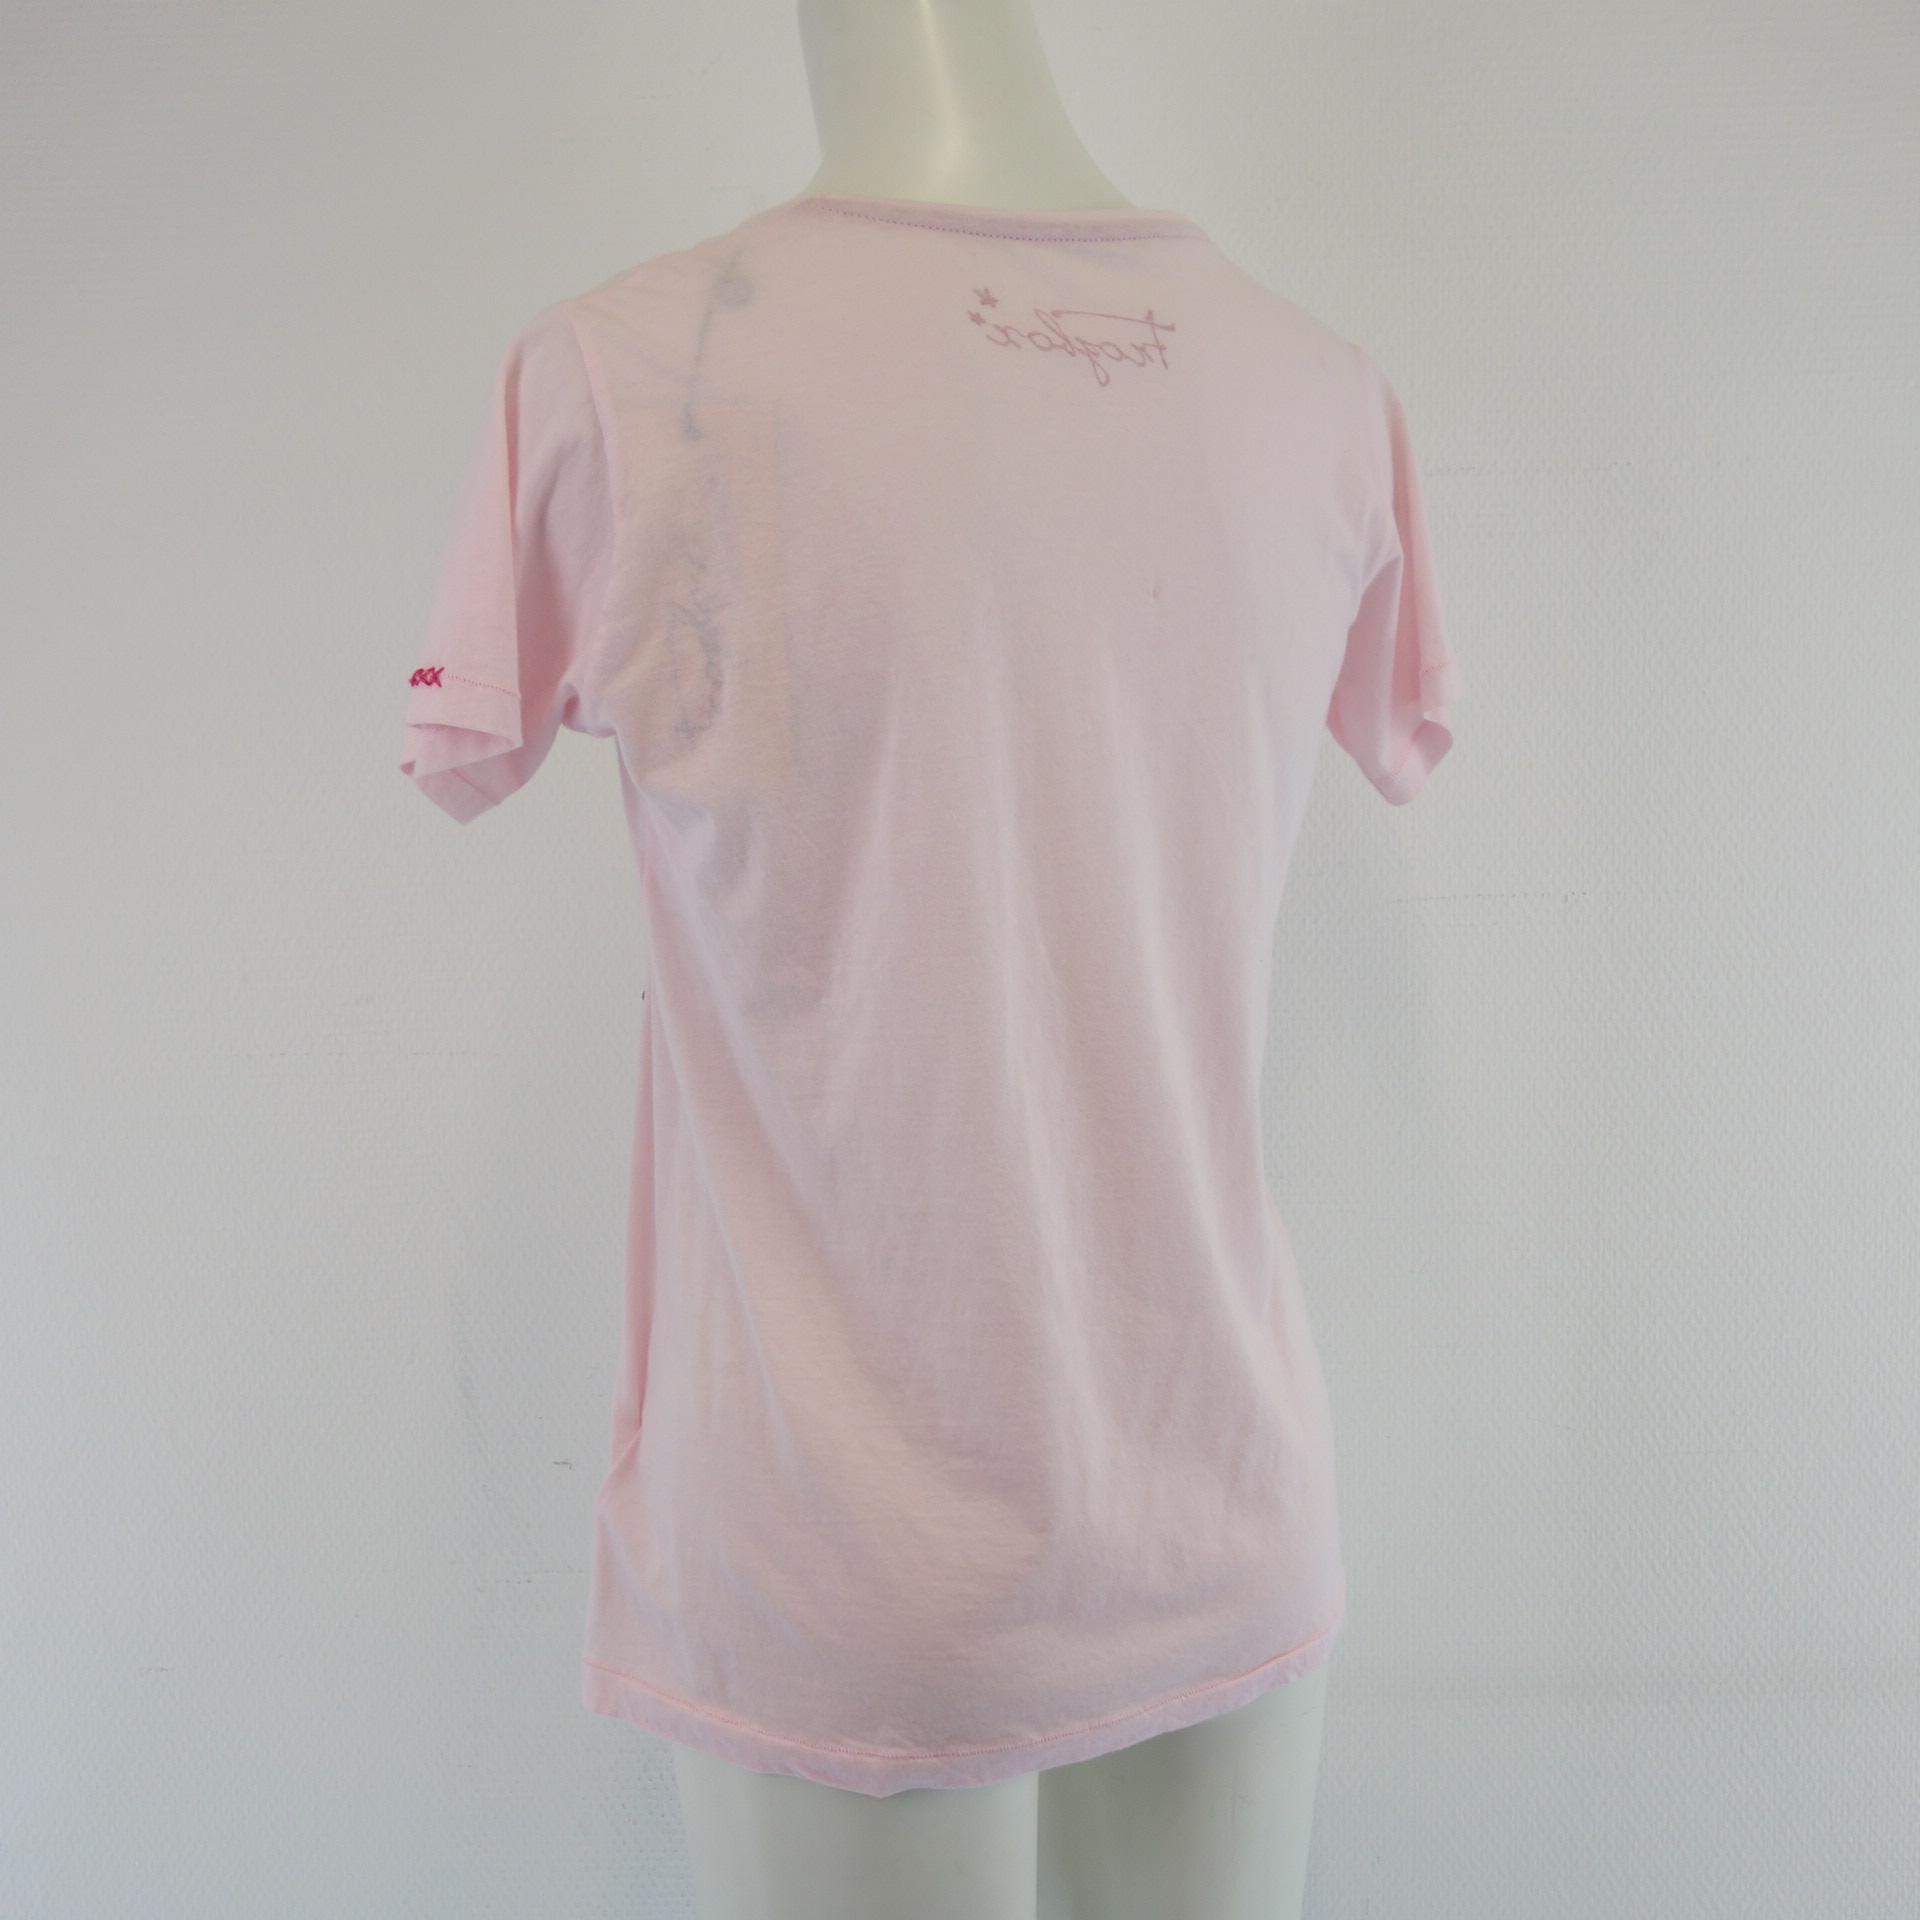 FROGBOX by Princess Damen T-Shirt Shirt Oberteil Rosa 100% Baumwolle Pailletten 